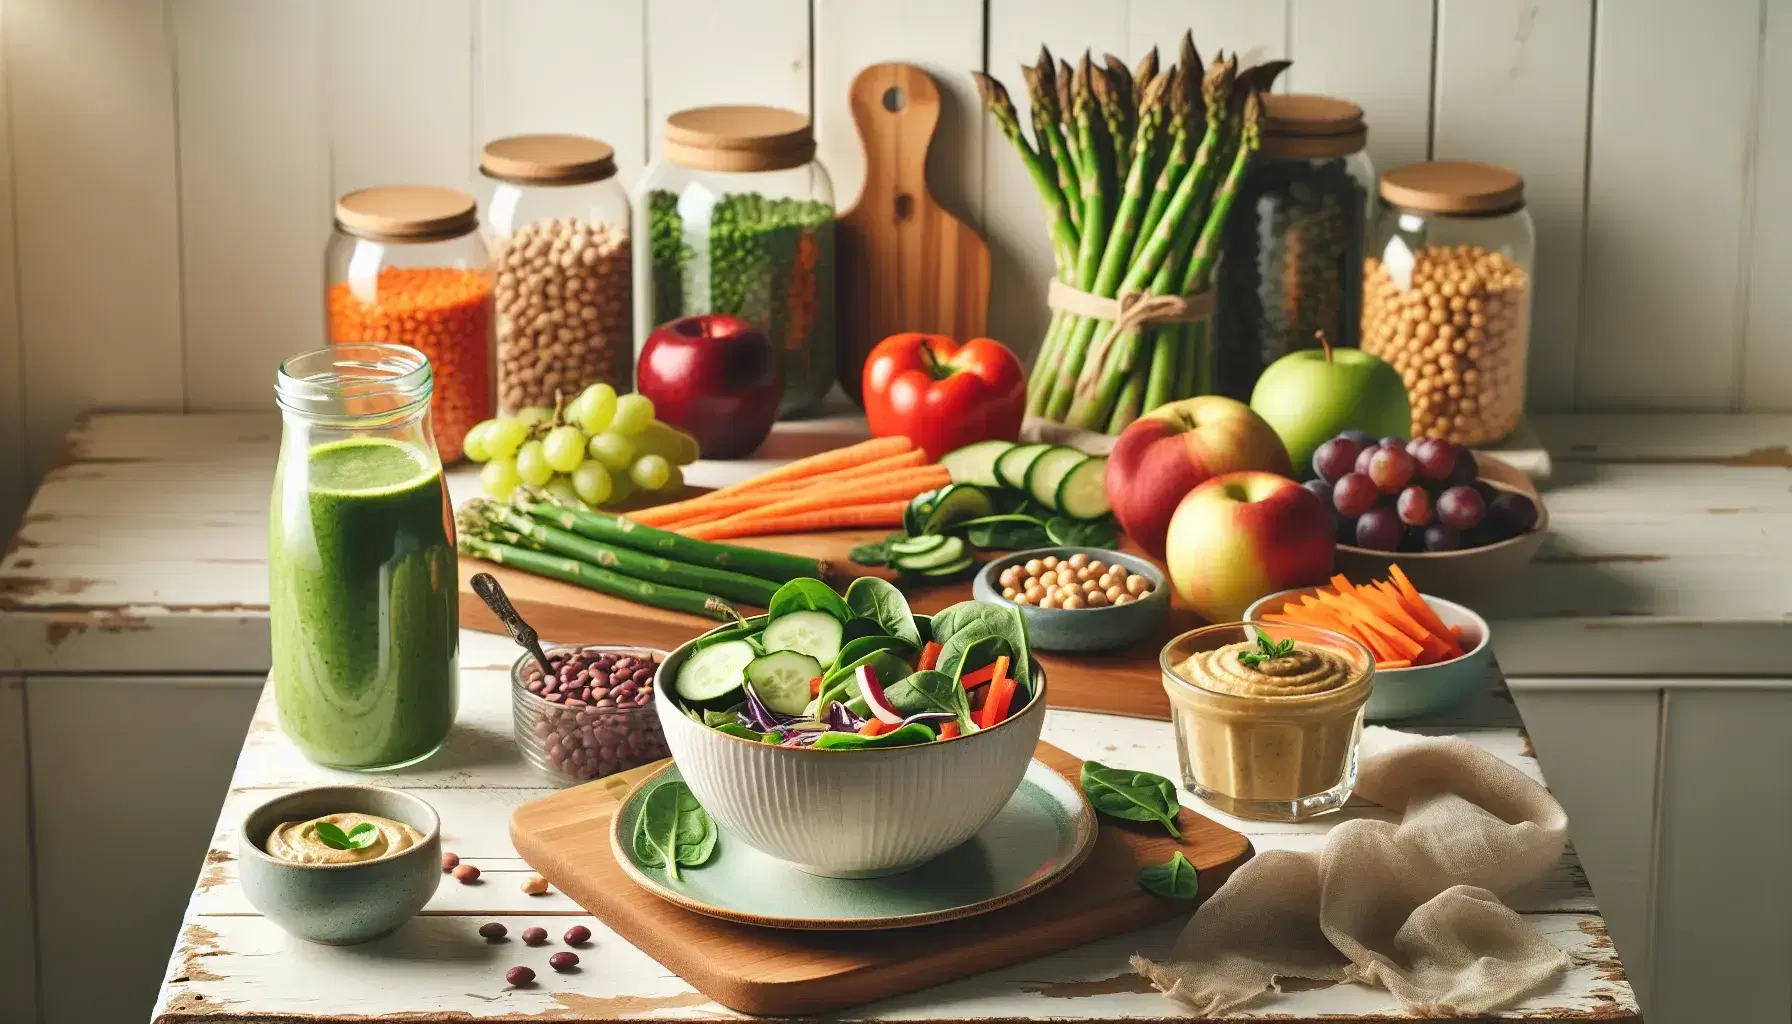 Mesa rústica con alimentos saludables, ensalada verde en bol, frutas en tabla de bambú, hummus con vegetales y vasos con batido y agua, al fondo tarros con legumbres.